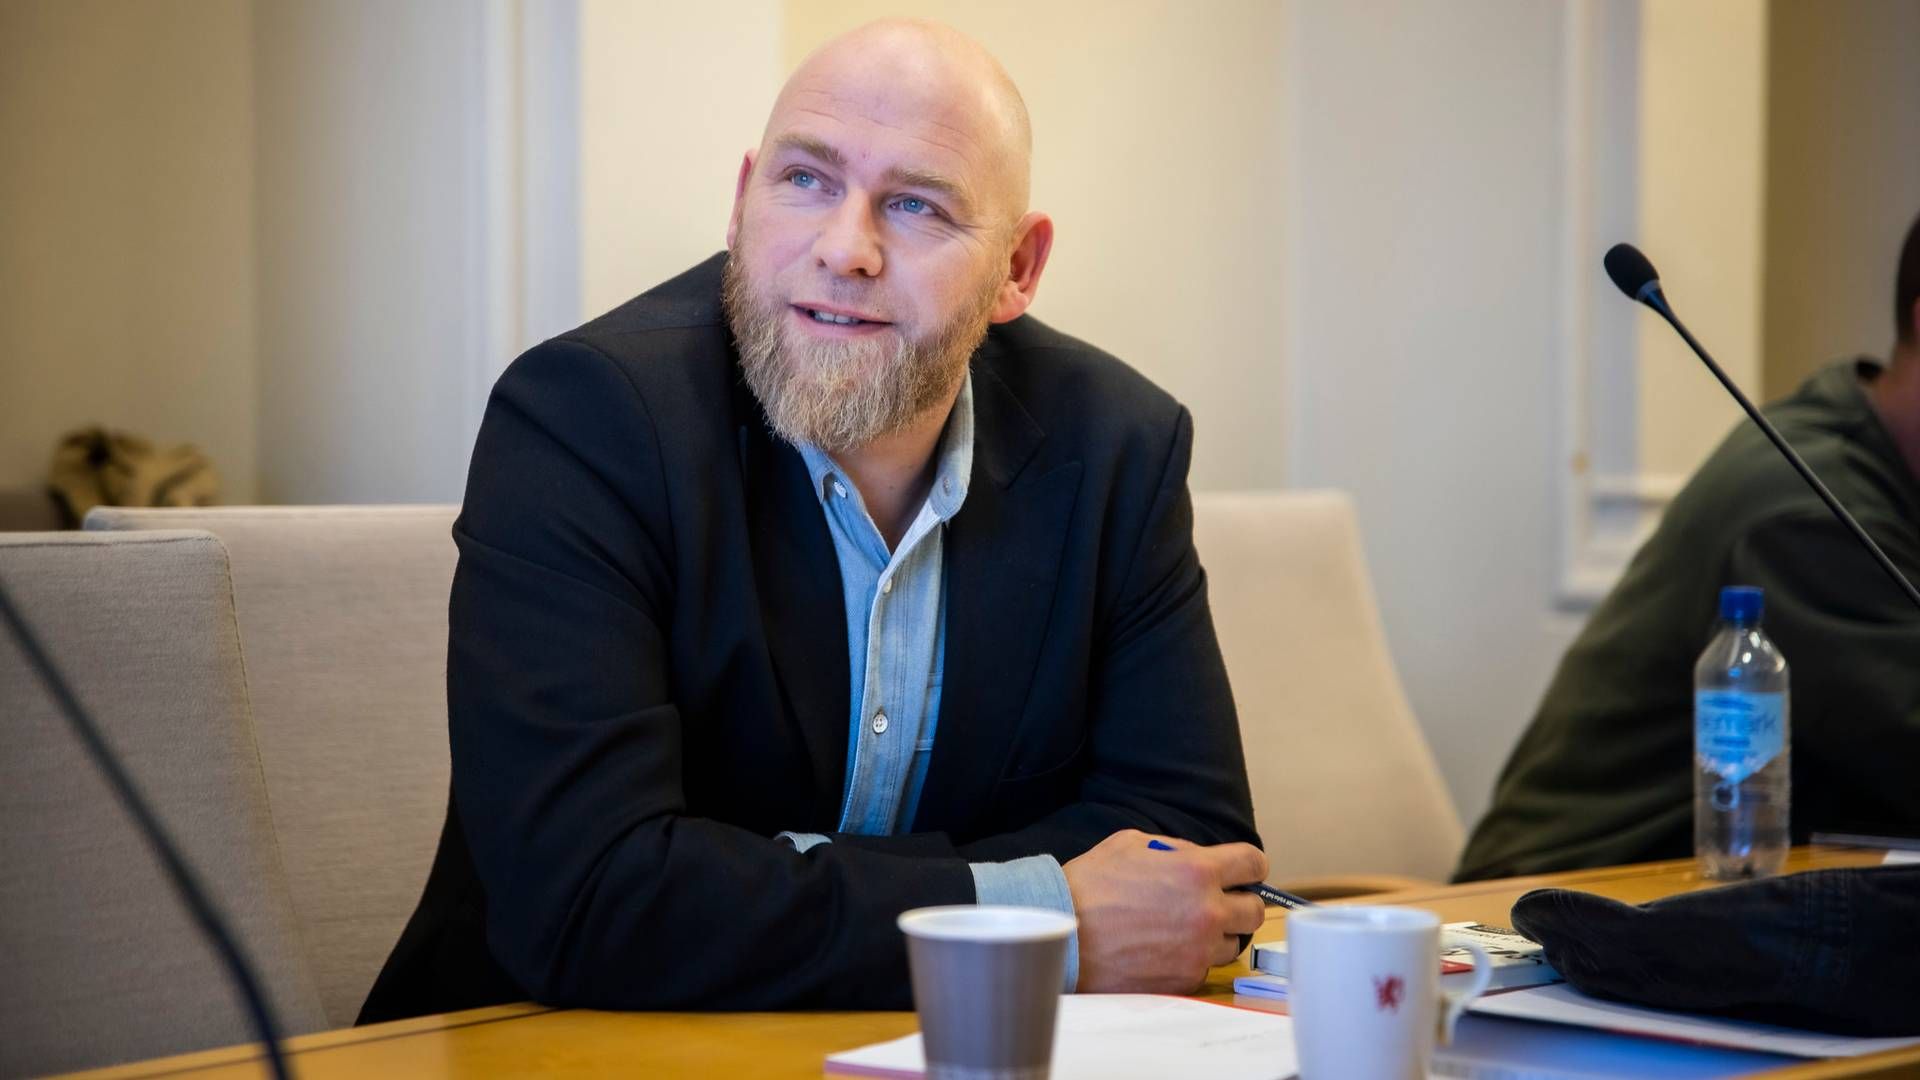 Landbrukspolitisk talsperson i Rødt og medlem av Næringskomiteen, Geir Jørgensen, mener samvirker som Tine bør styrkes. | Foto: Ihne Pedersen